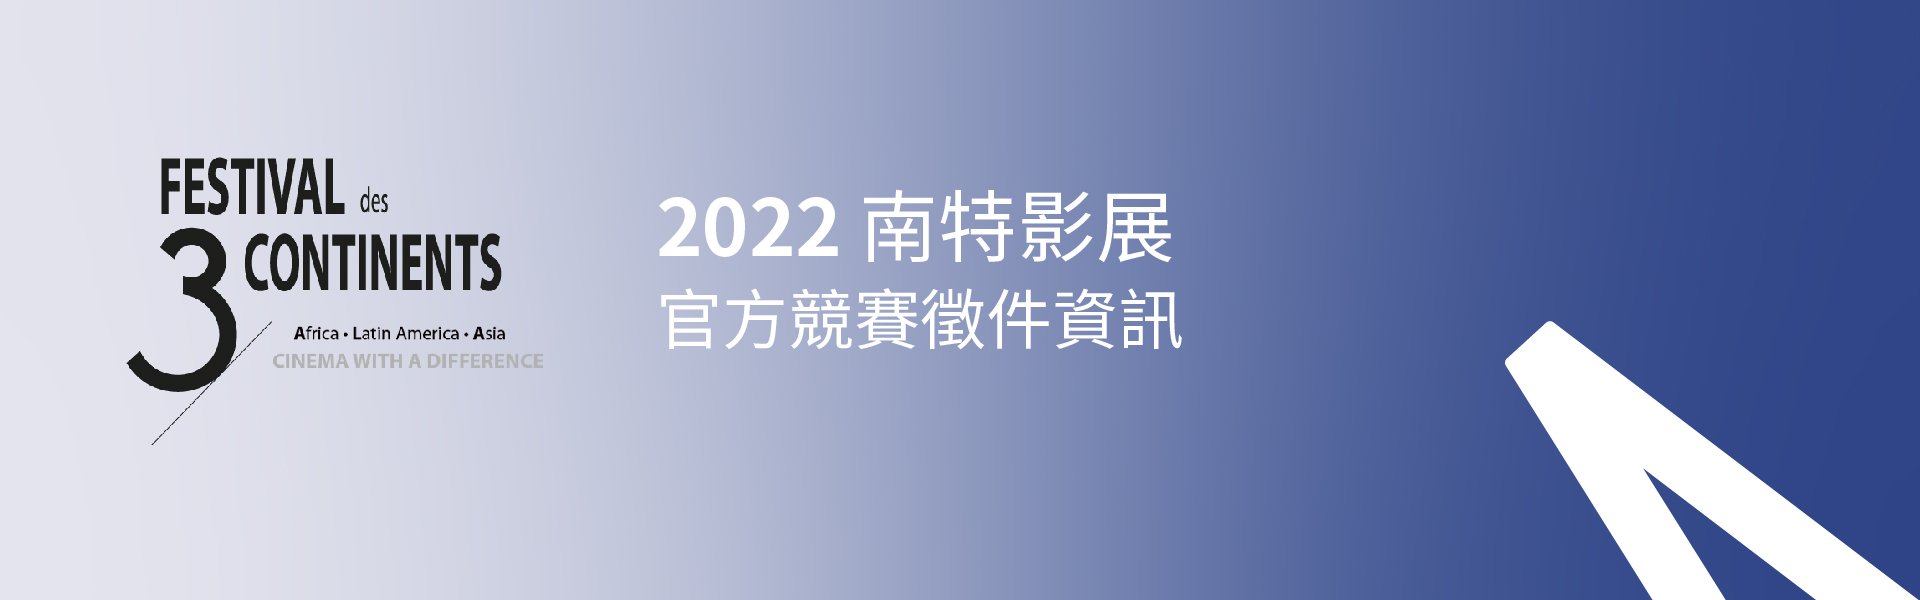 「2022 南特影展」官方競賽徵件資訊